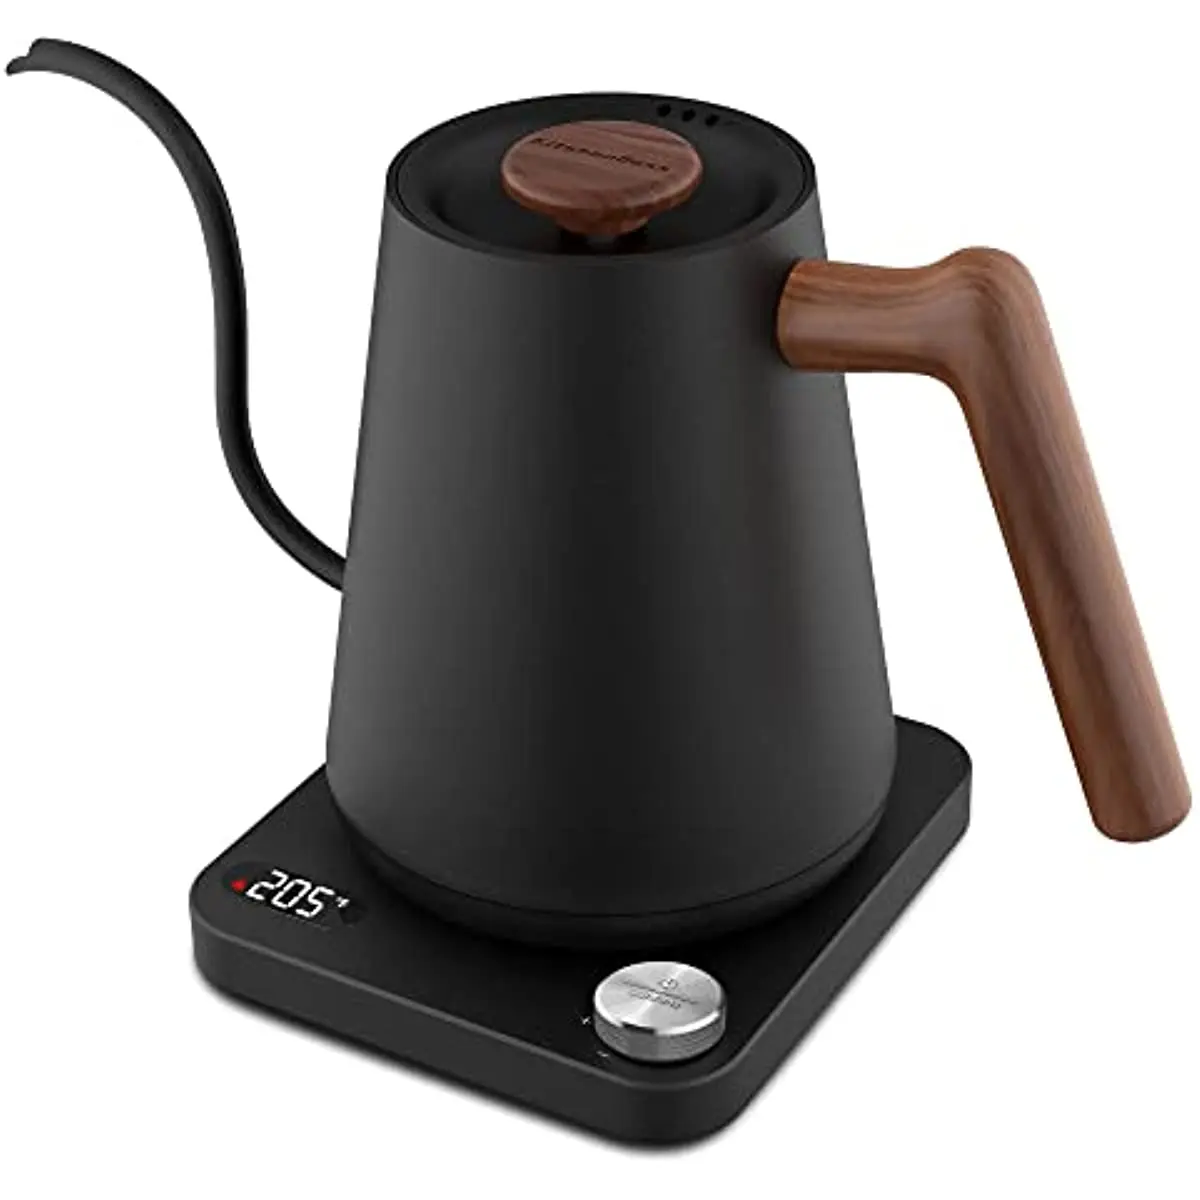 

Электрический чайник с гусиной шеей: кухонный чайник с контролем температуры на 1 литр, 1350 Вт, быстро нагревается и сохраняет тепло